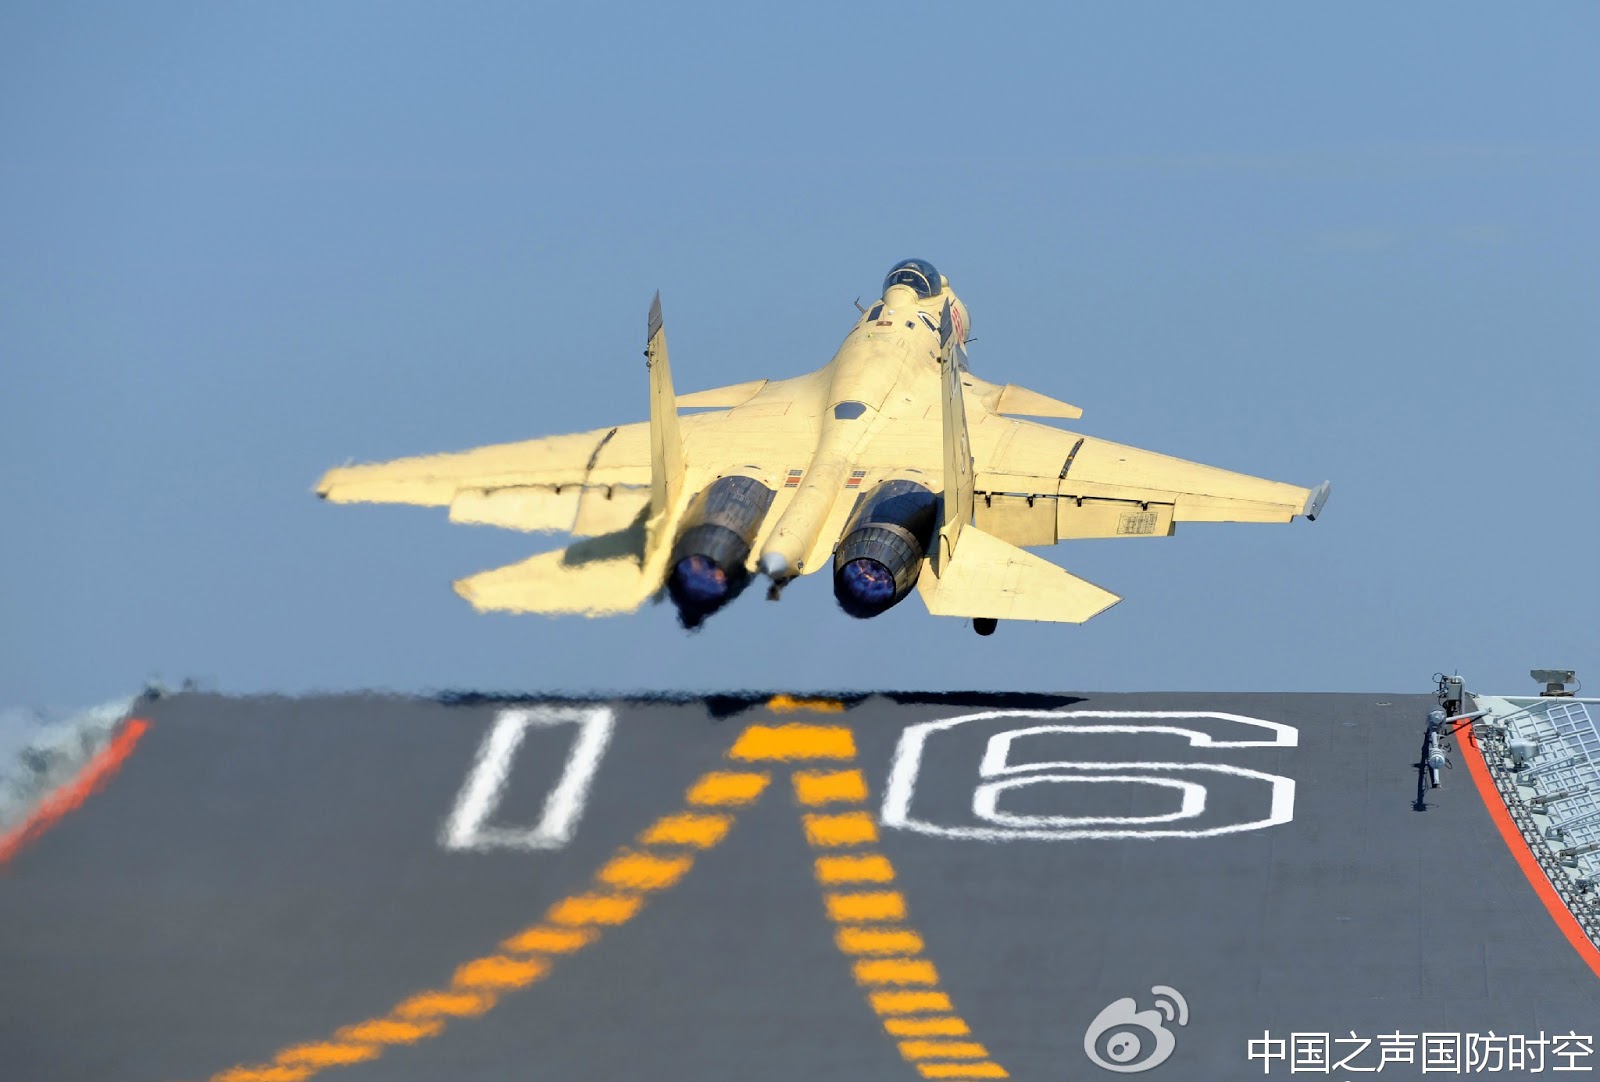 المقاتلة الصينية جي 15 0CHINESE+j-15+flying+sharke+fighterChina++Aircraft+Carrier+Liaoning+CV16+j-15+16+17+22+21+31+z8+9+10+11+12+13fighter+jet+aewc+PLA+NAVY+PLAAF+PLANAF+LANDING+TAKEOFF+(2)